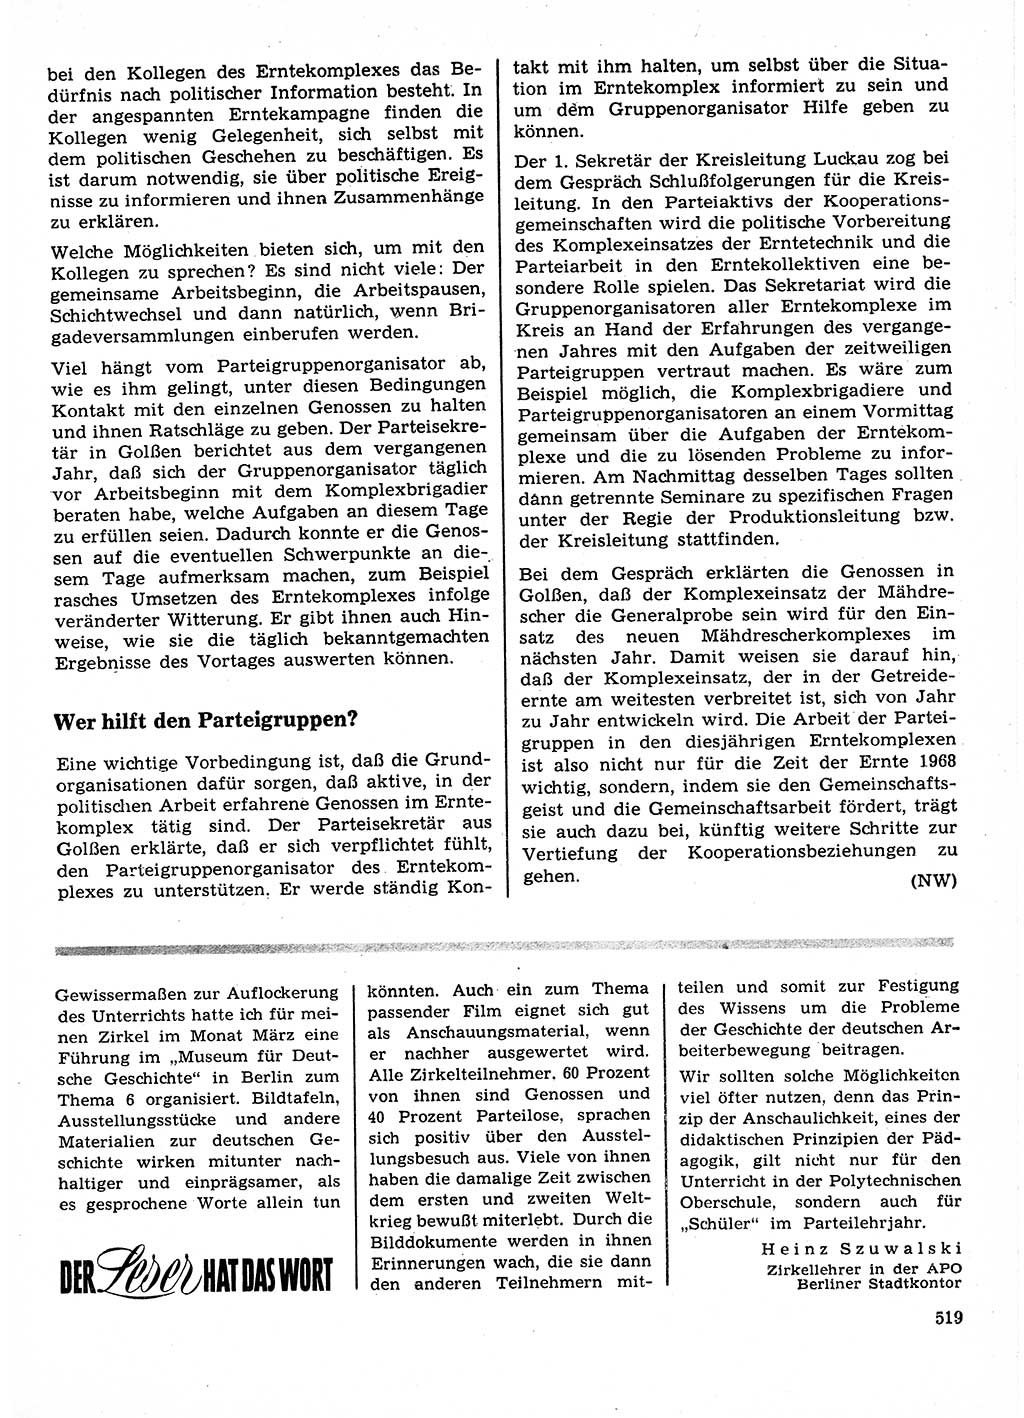 Neuer Weg (NW), Organ des Zentralkomitees (ZK) der SED (Sozialistische Einheitspartei Deutschlands) für Fragen des Parteilebens, 23. Jahrgang [Deutsche Demokratische Republik (DDR)] 1968, Seite 519 (NW ZK SED DDR 1968, S. 519)